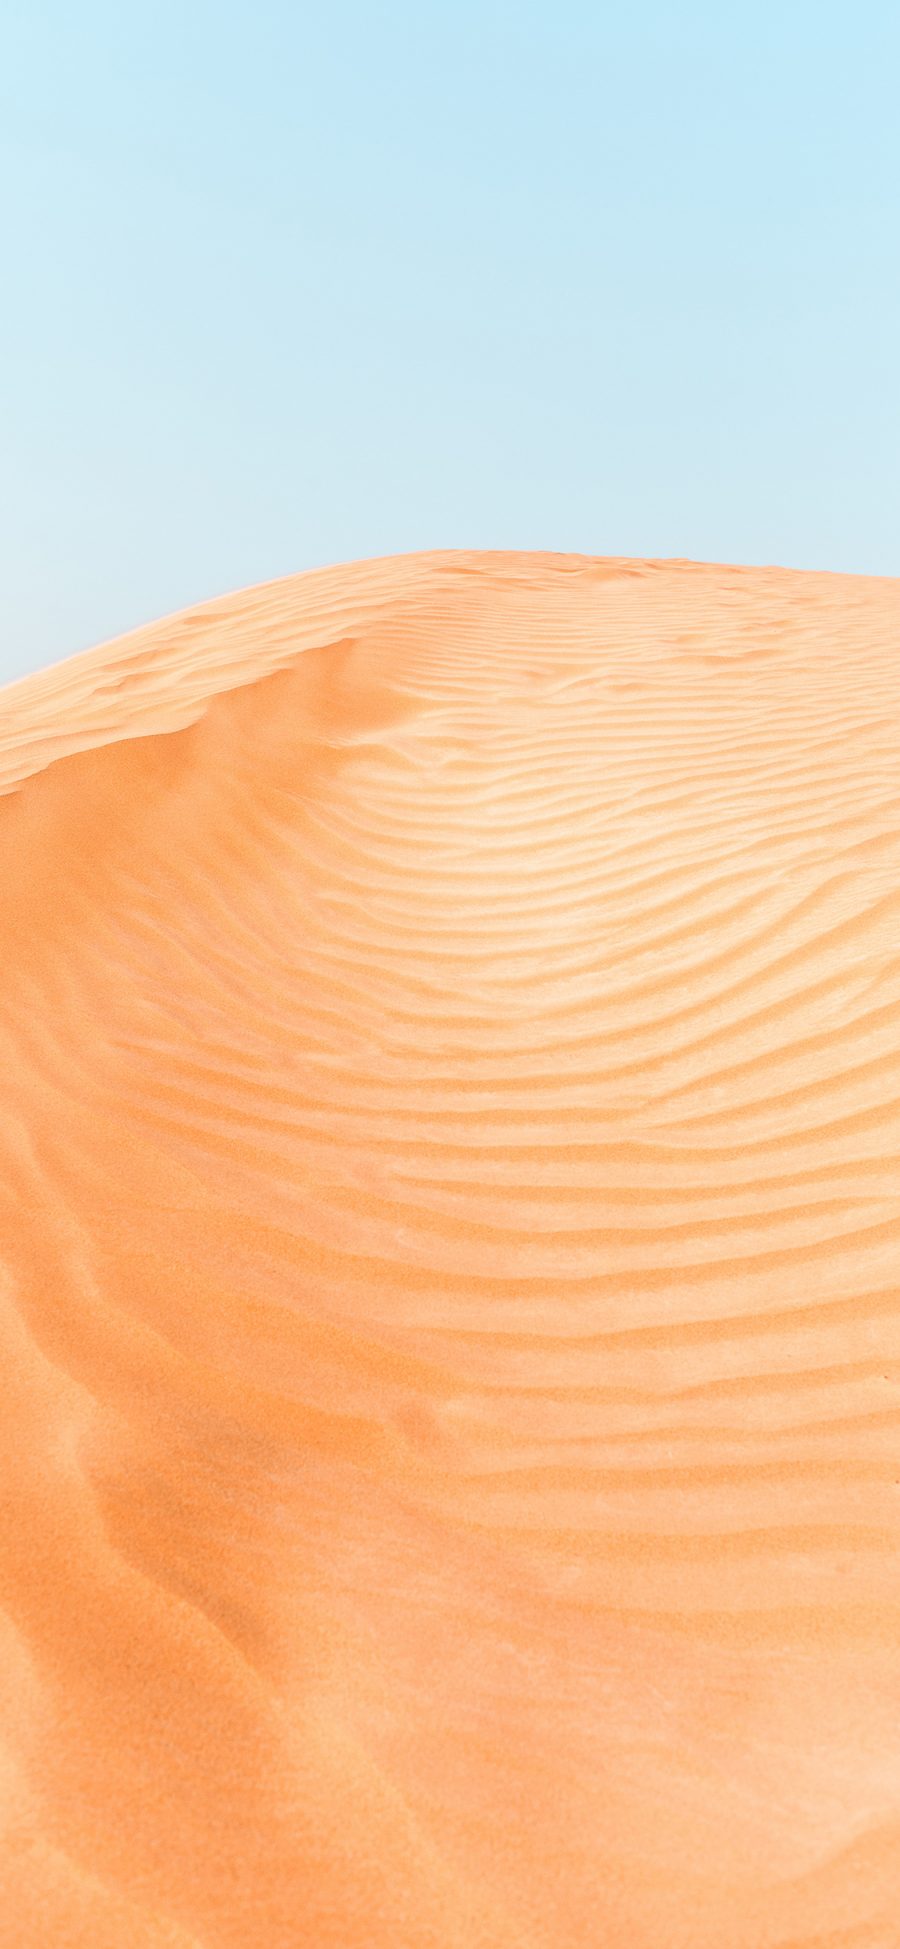 [2436×1125]沙漠 荒漠 细沙 黄沙 苹果手机壁纸图片